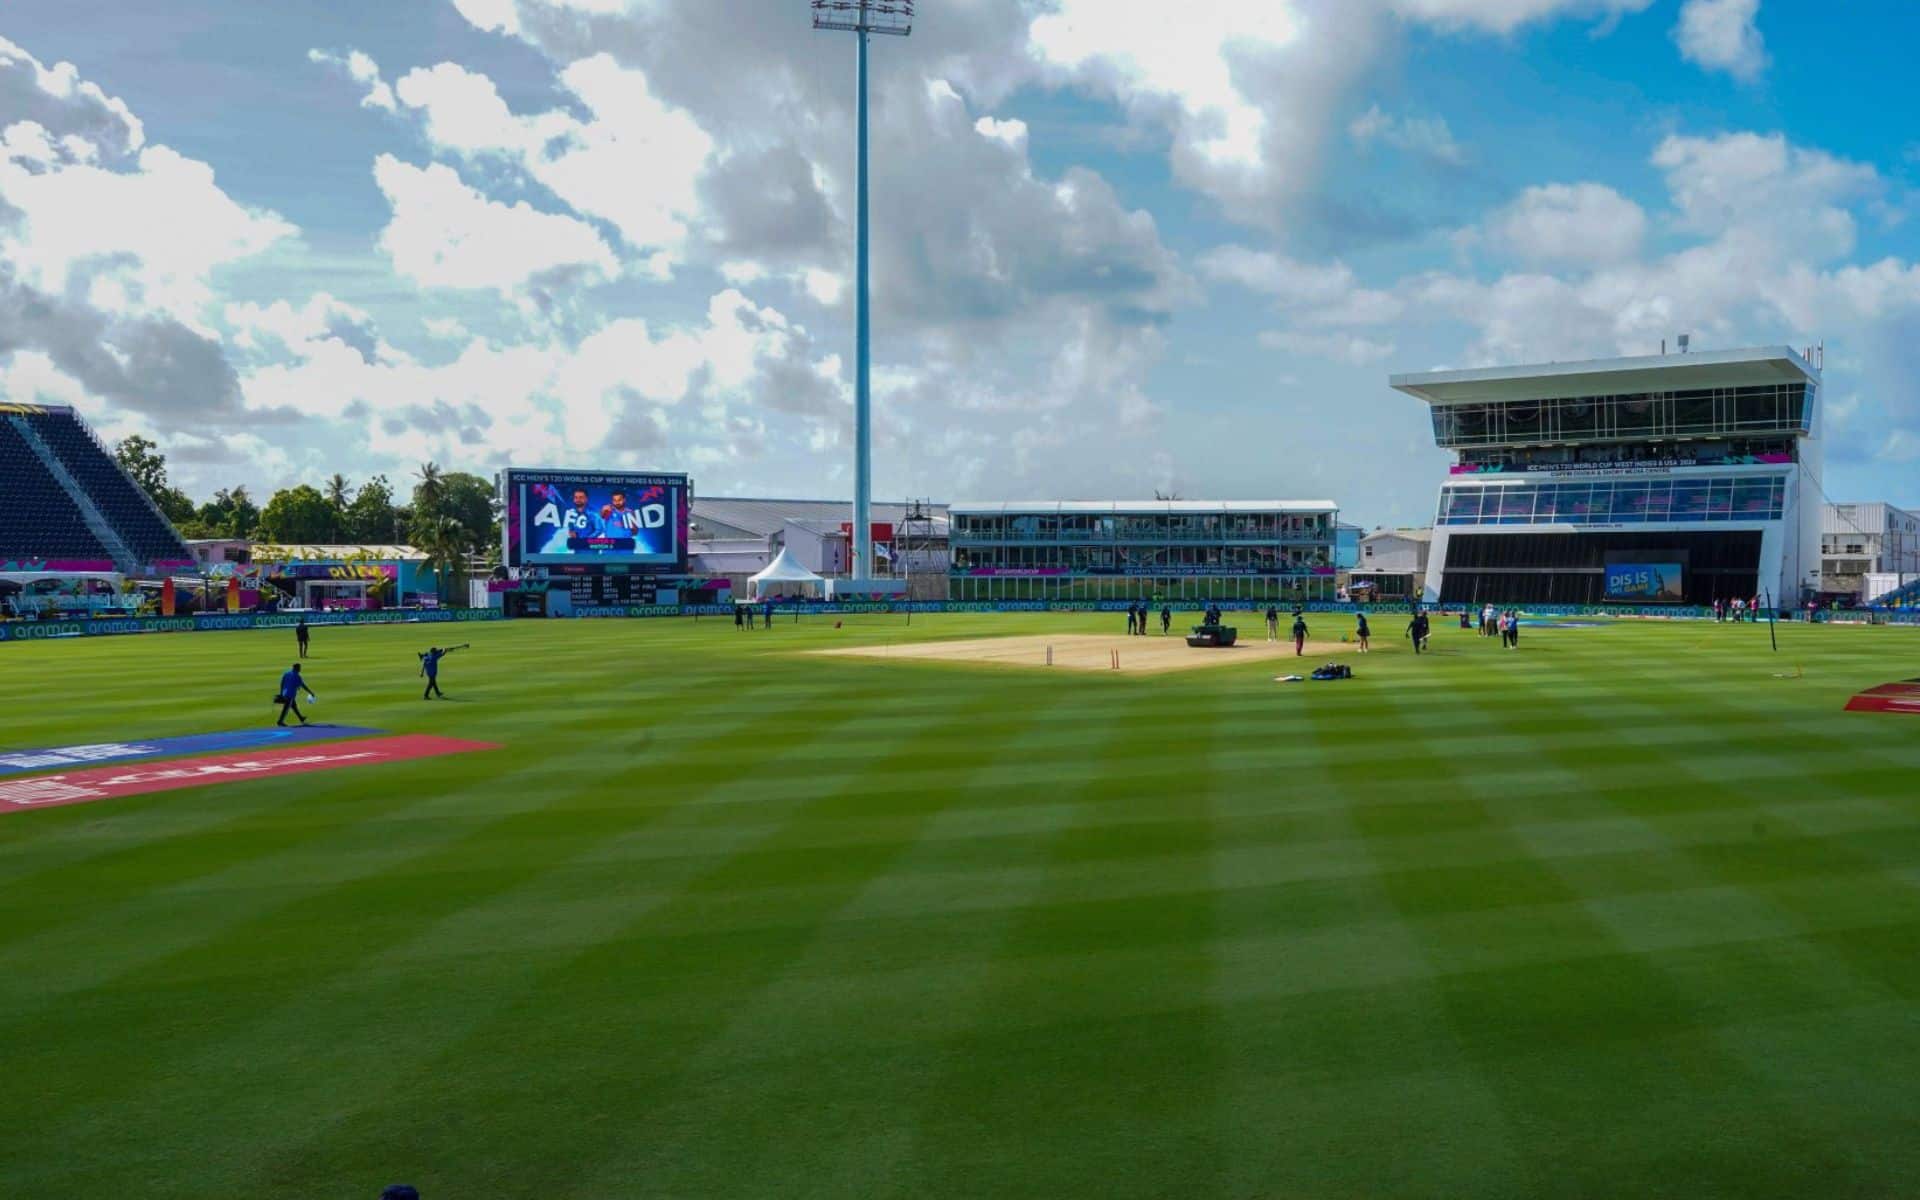 Kensington Oval Barbados Pitch Report For USA Vs ENG [X.com]